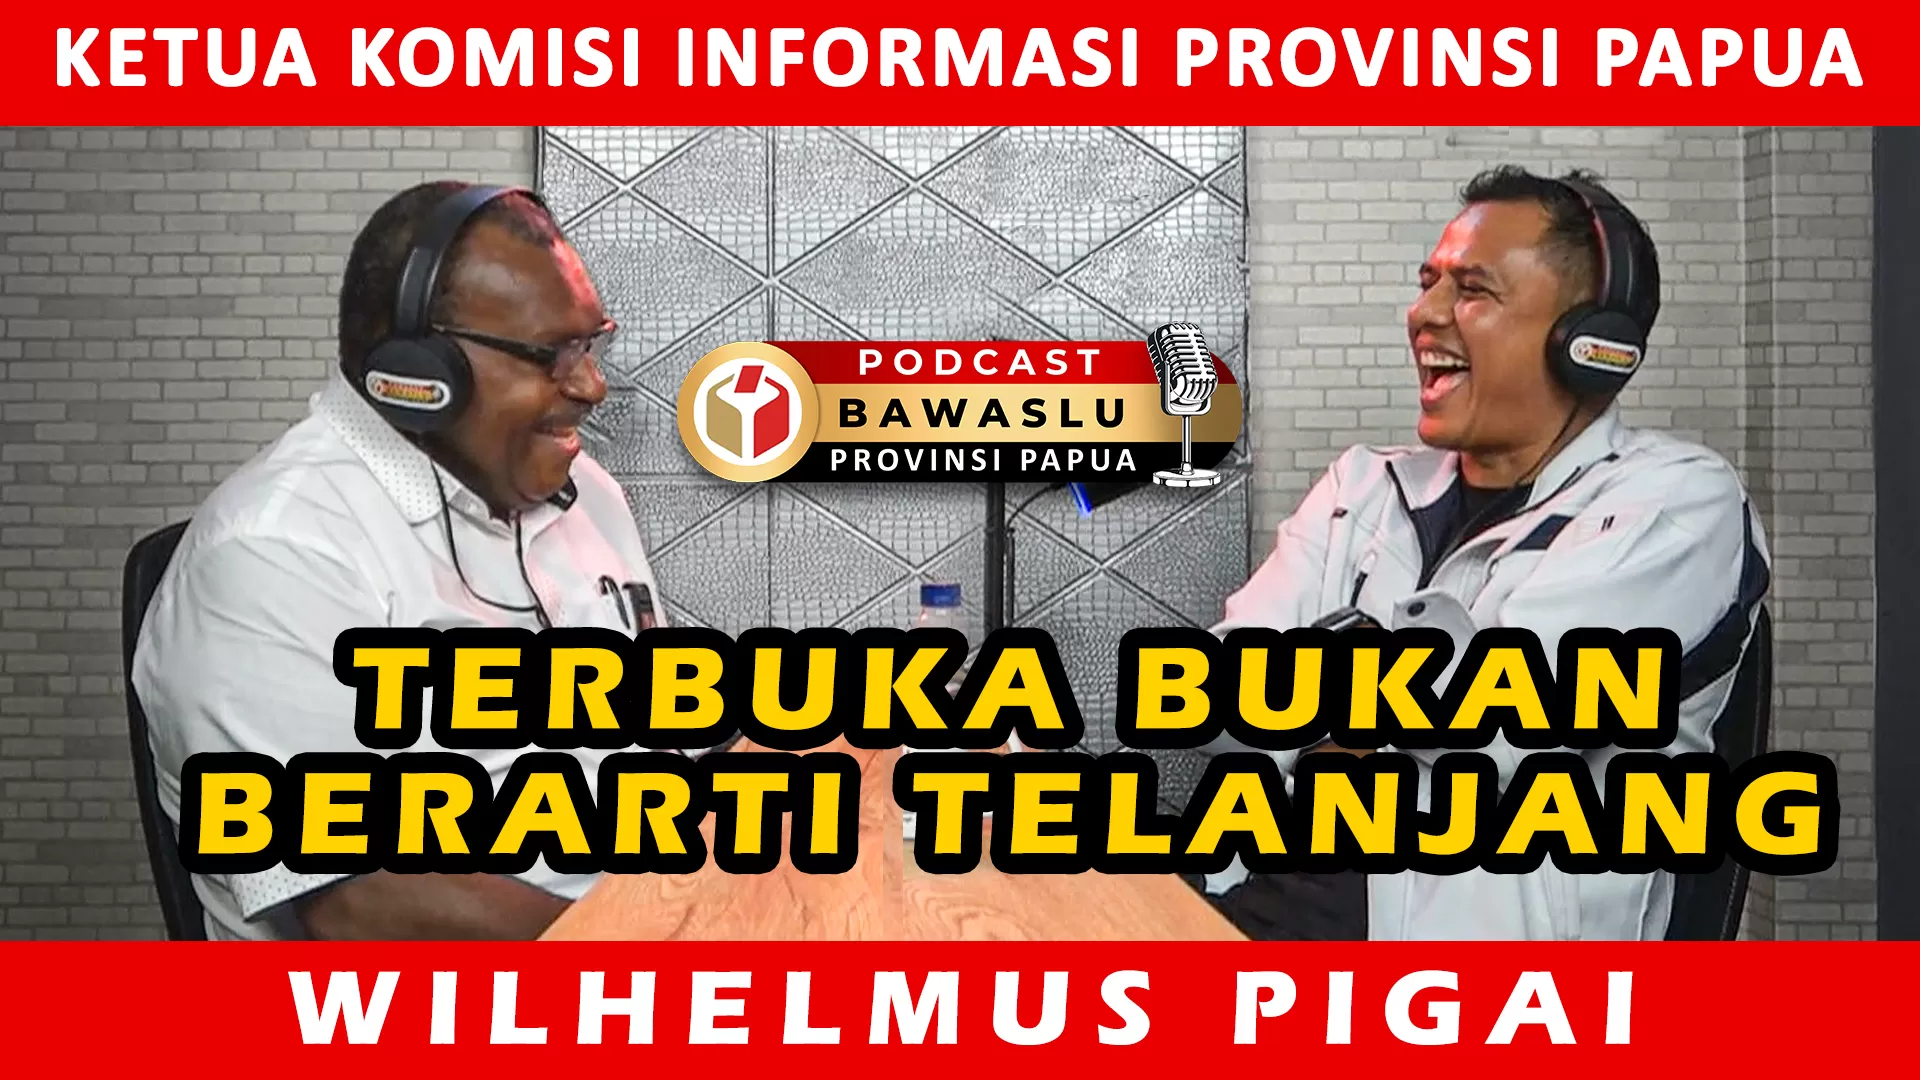 Podcast Bersama Ketua Komisi Informasi Provinsi Papua - BAWASLU TERBUKA, PEMILU TERPERCAYA